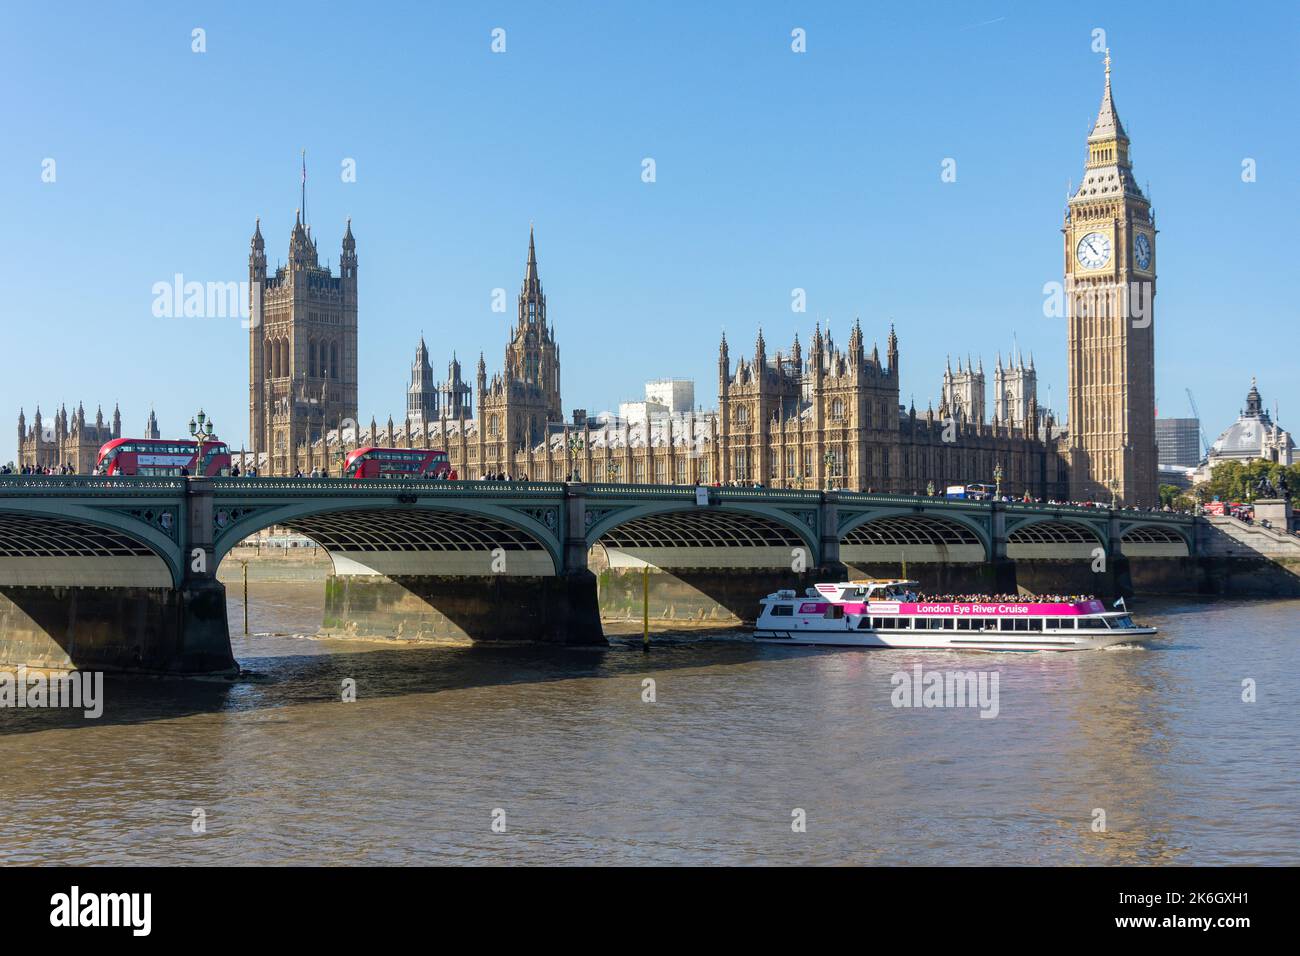 Palais de Westminster (chambres du Parlement) de l'autre côté de la Tamise, Cité de Westminster, Grand Londres, Angleterre, Royaume-Uni Banque D'Images